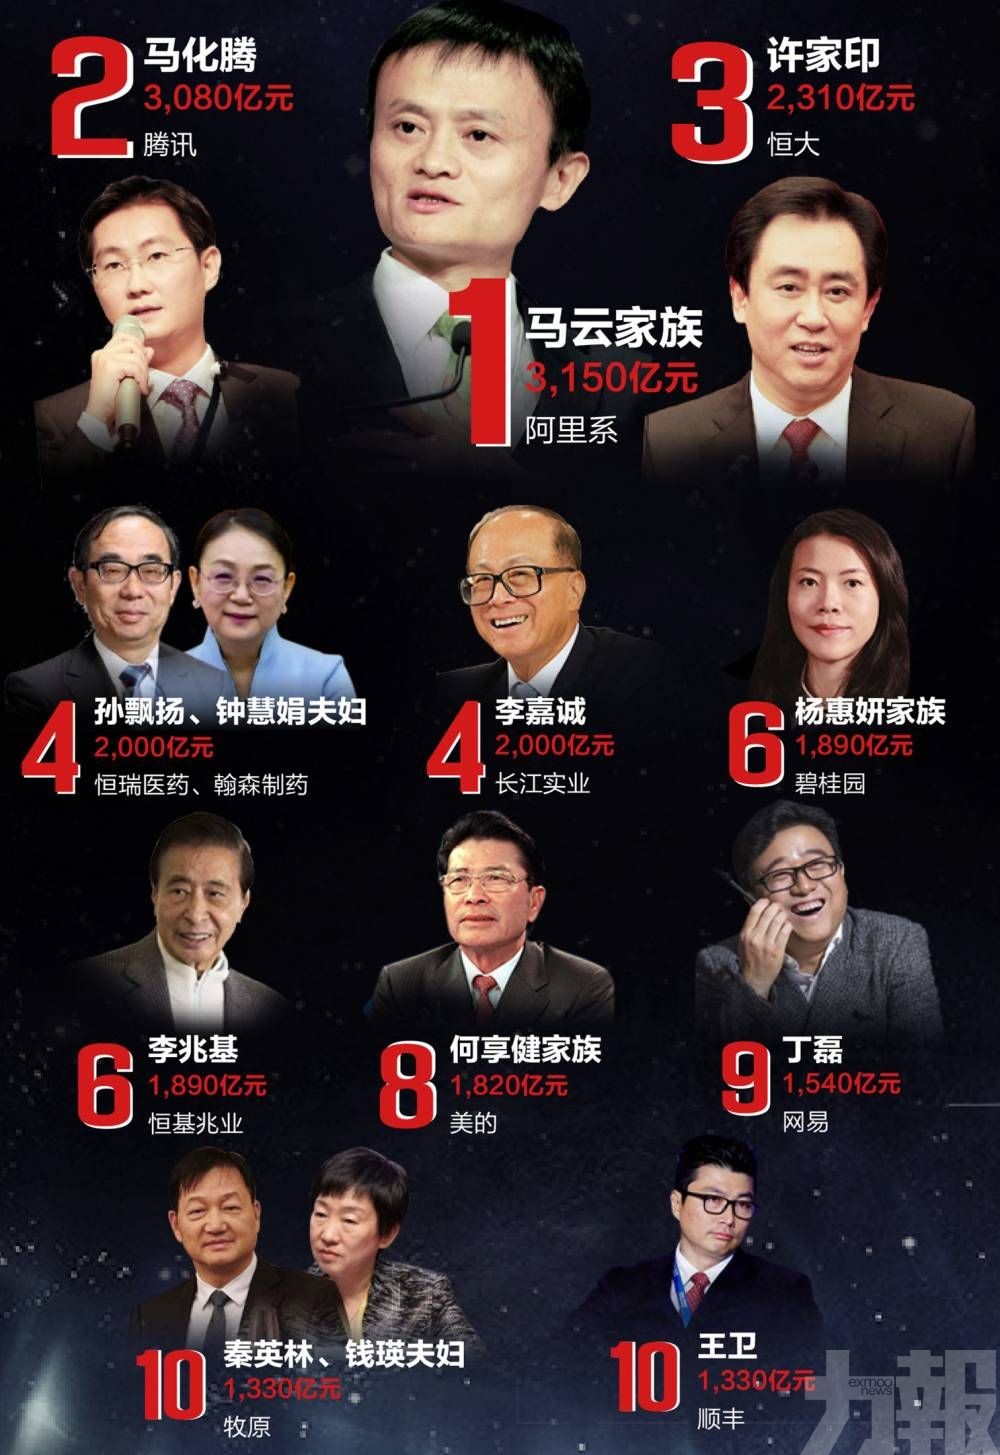 馬雲列2020胡潤中國富豪榜首位